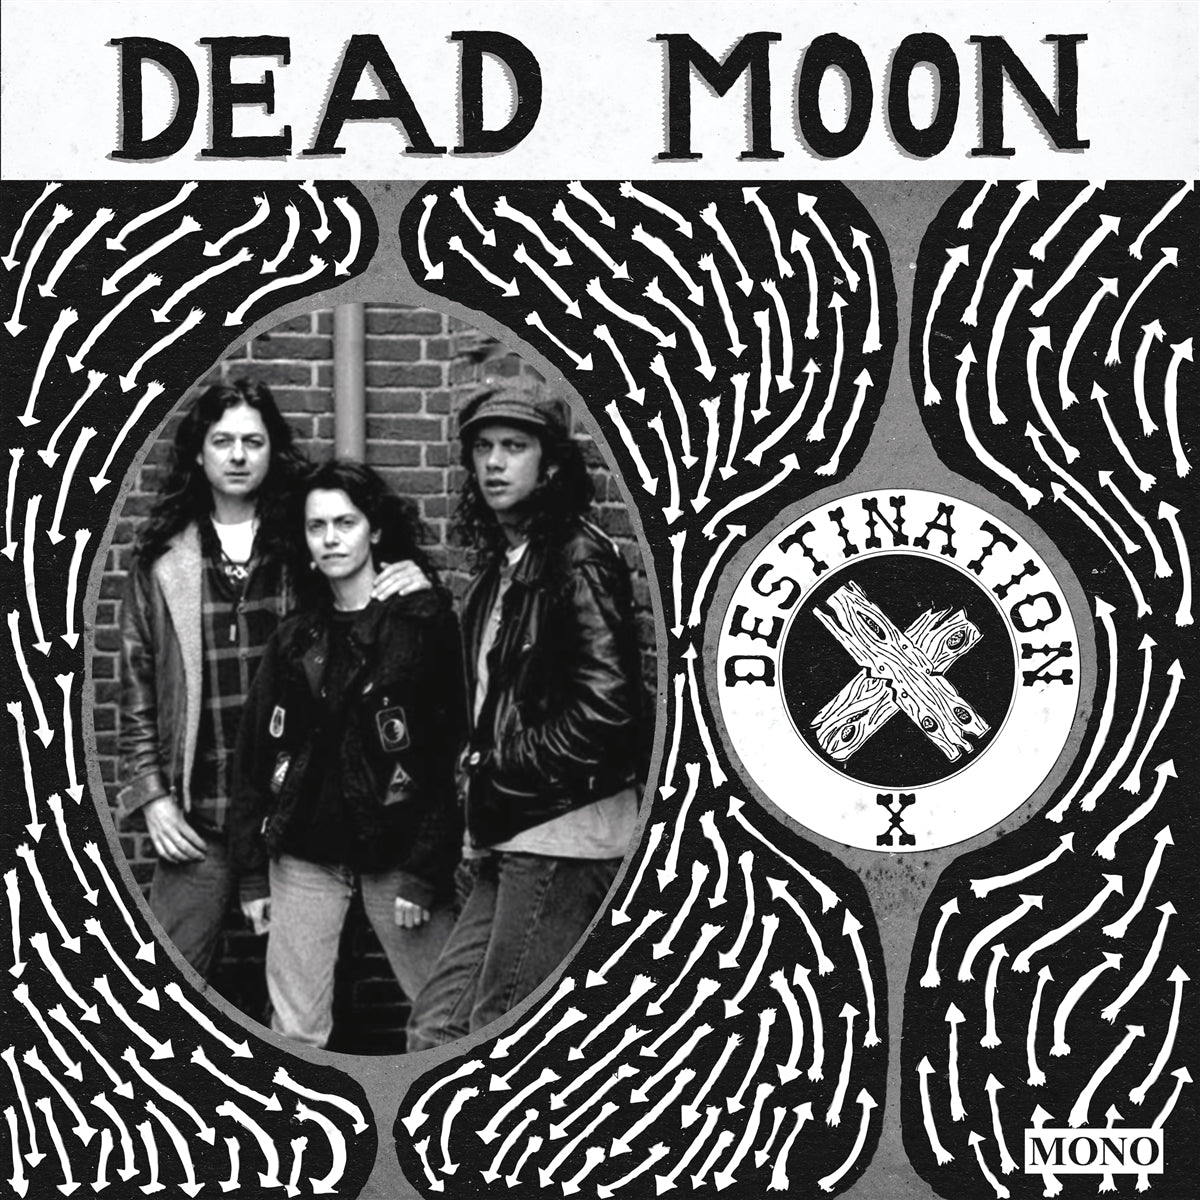 Dead Moon - Destination X - LP